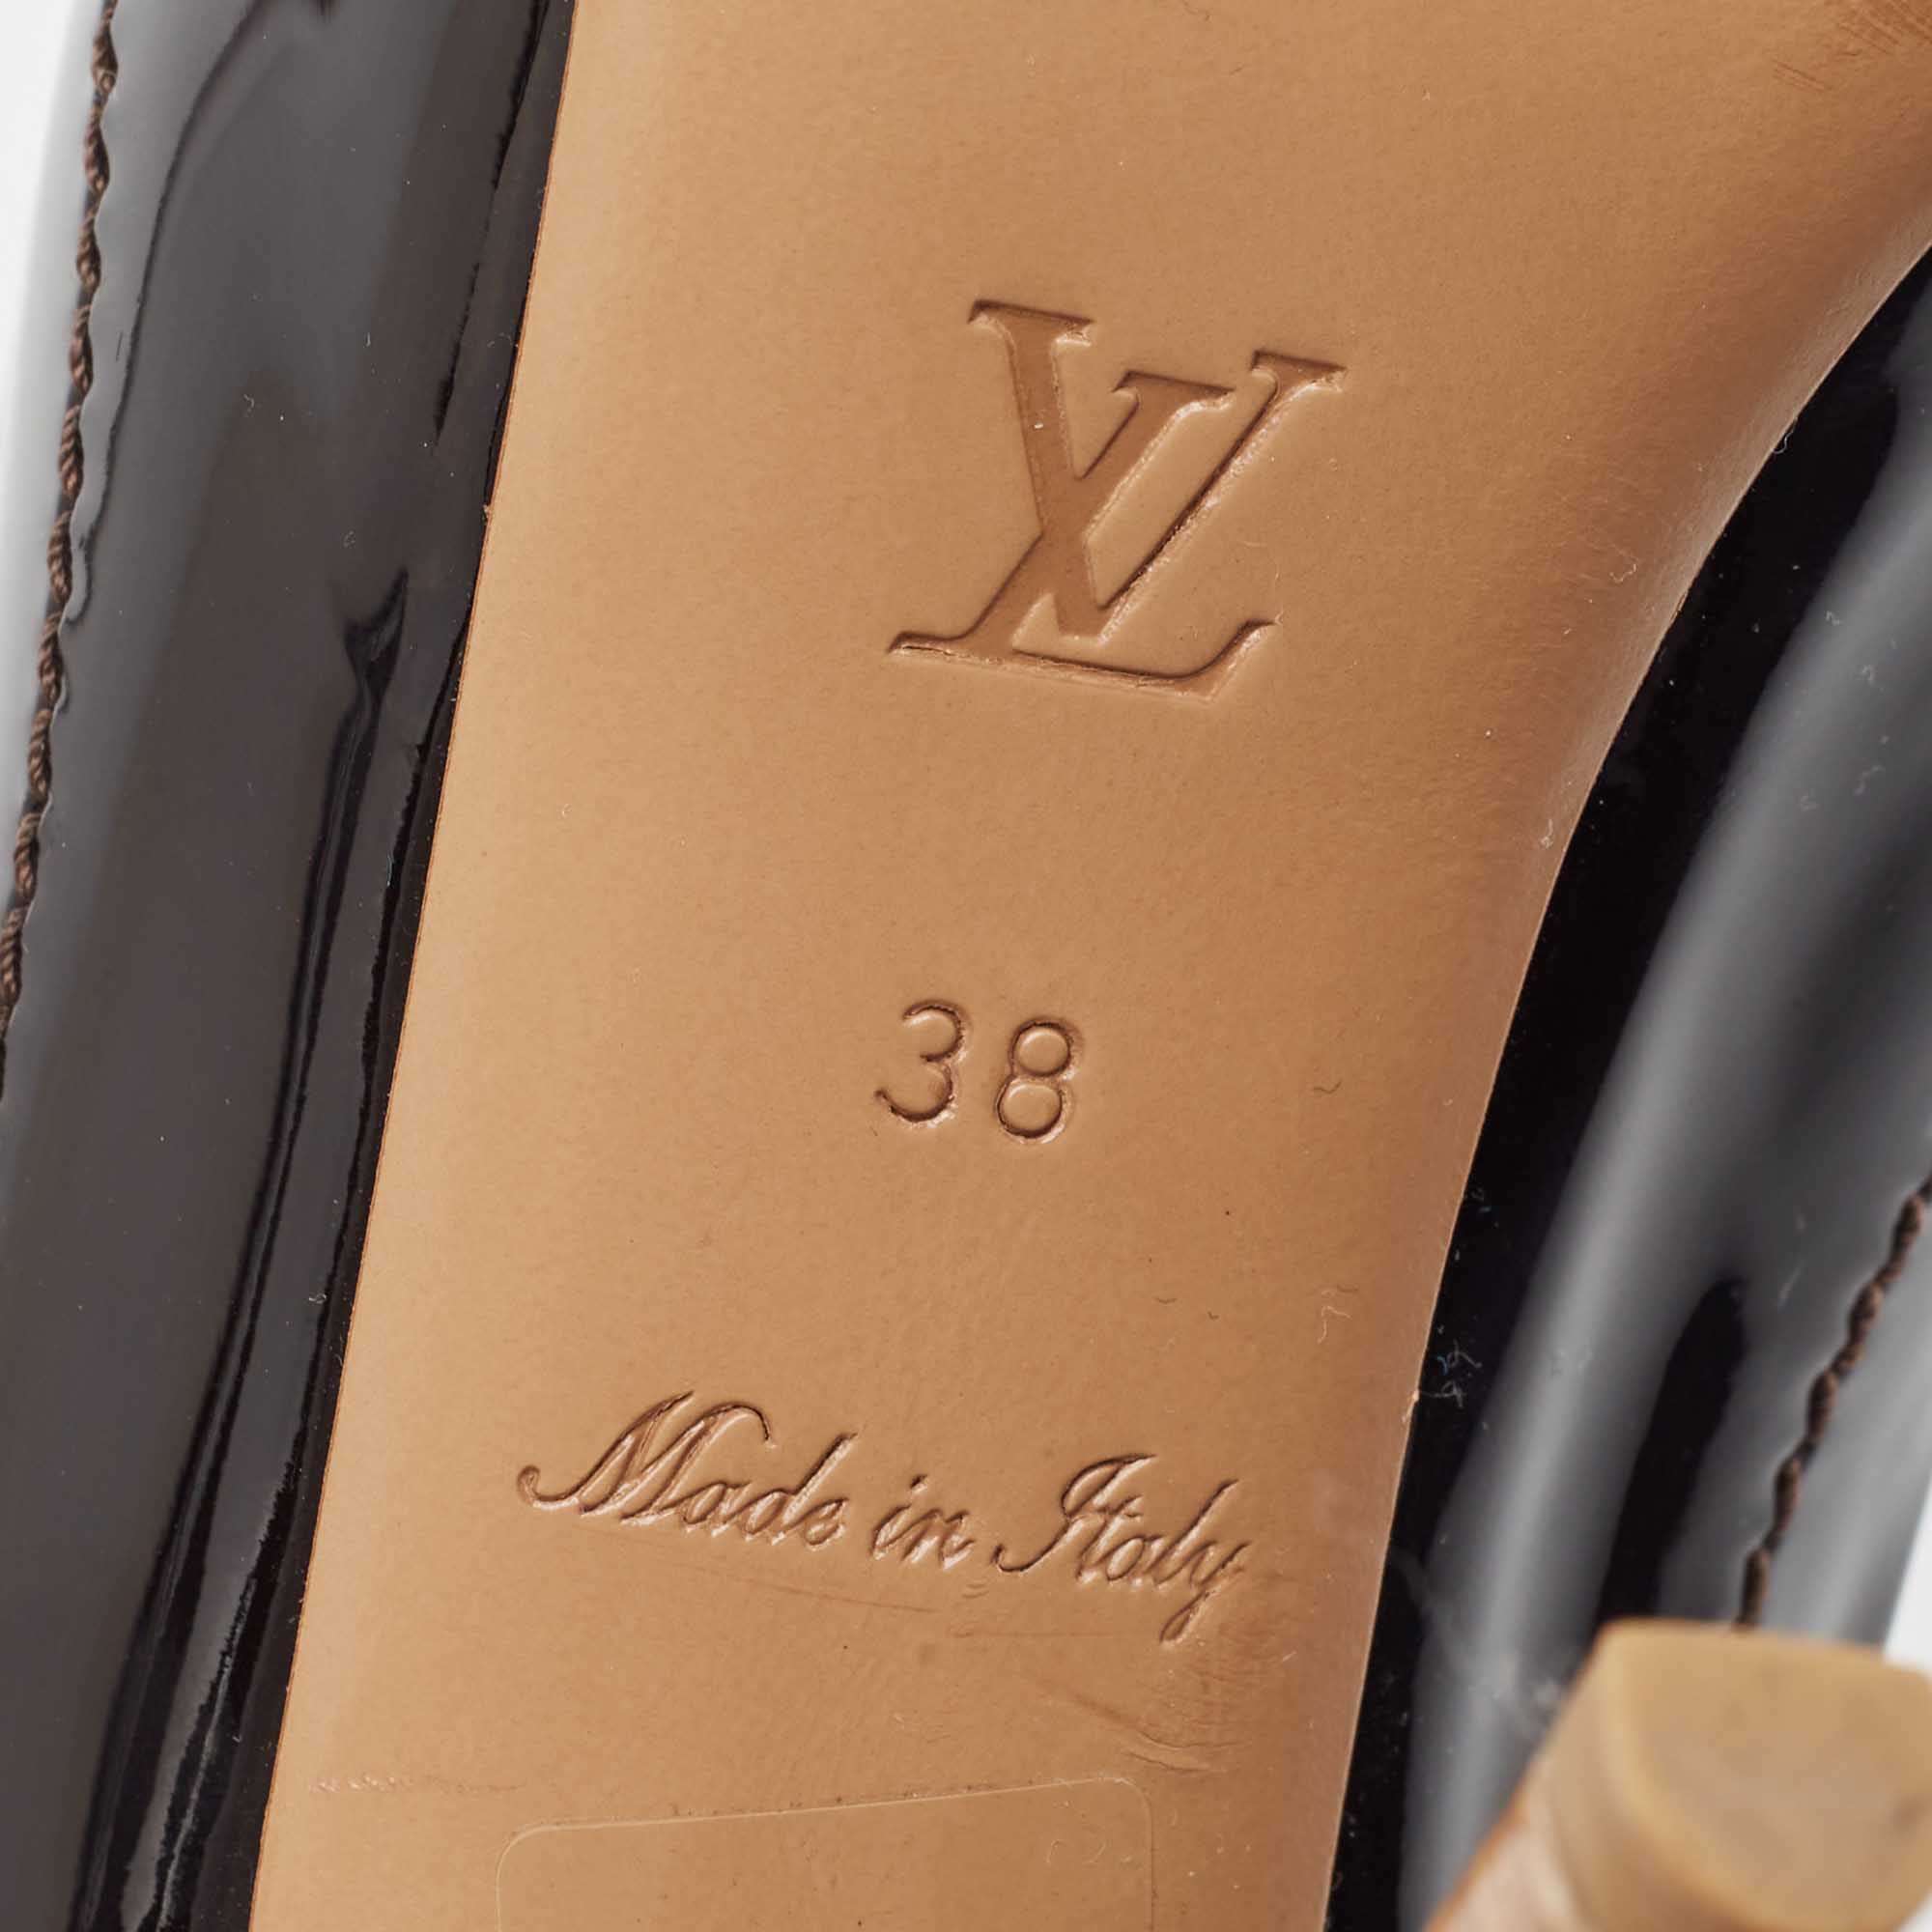 Louis Vuitton Black Patent Leather Slingback Pumps Size 38